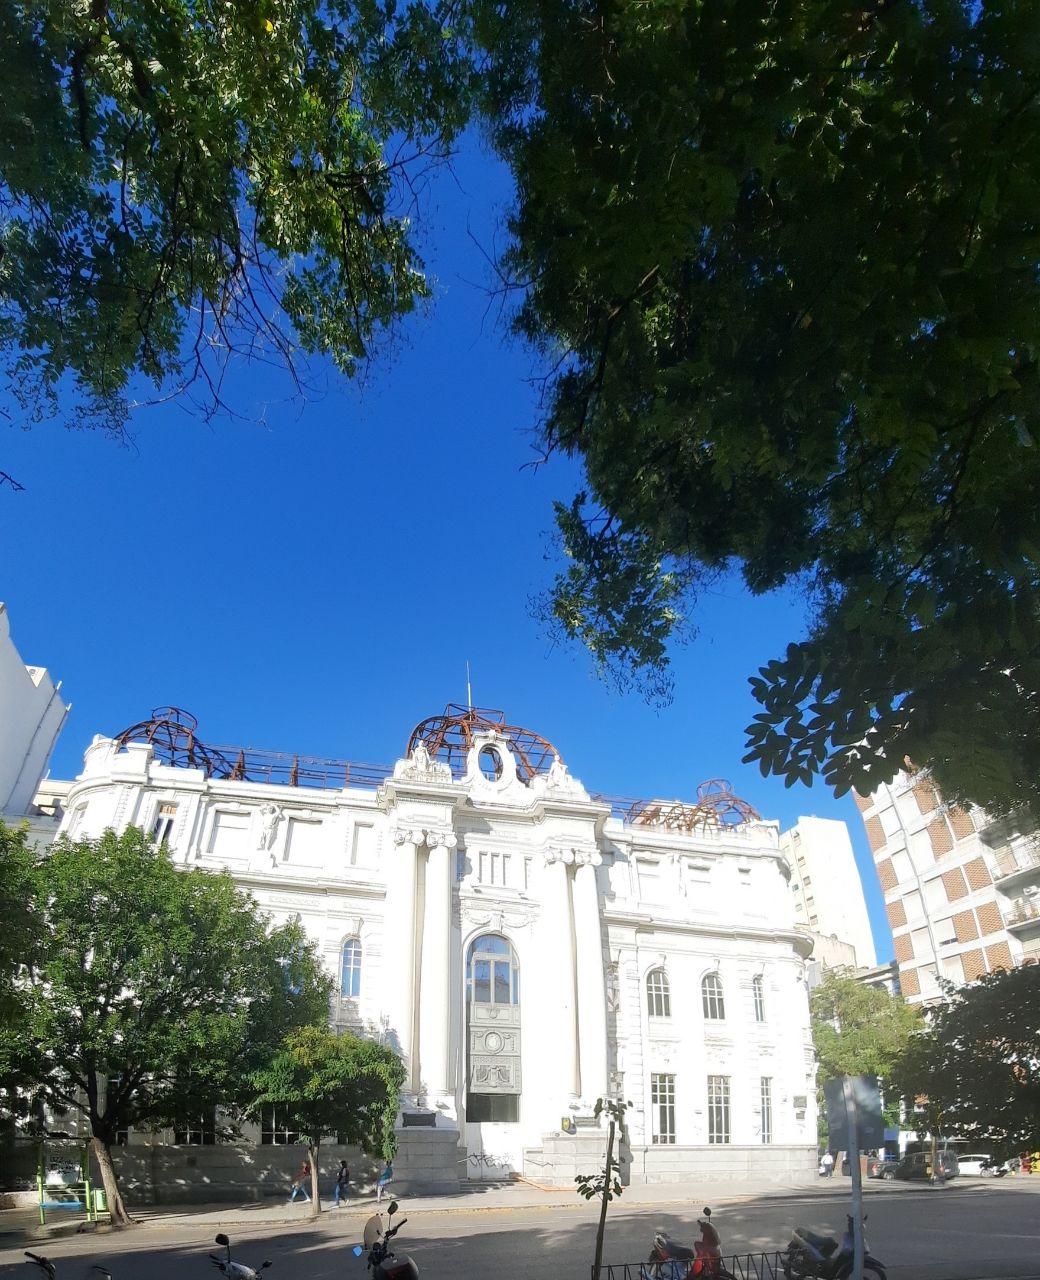 Banco Nación - From Plaza Rivadavia, Argentina